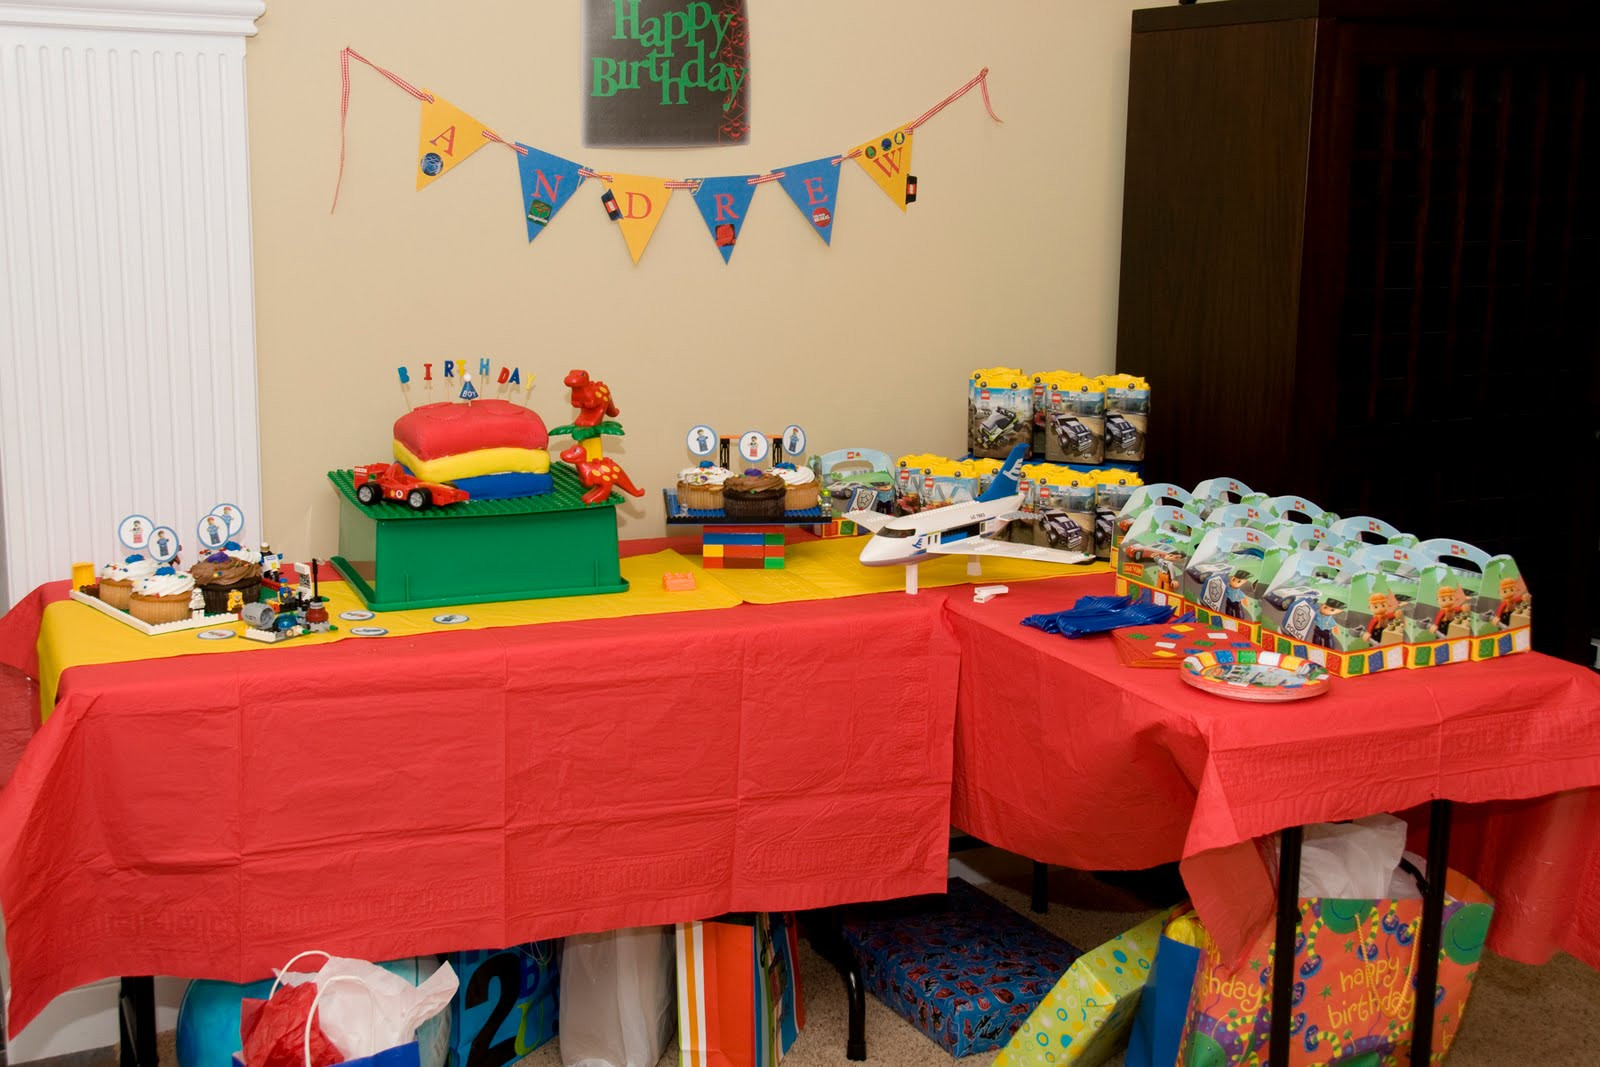 Lego Birthday Party Supplies
 Lego Birthday Party The Polkadot Chair